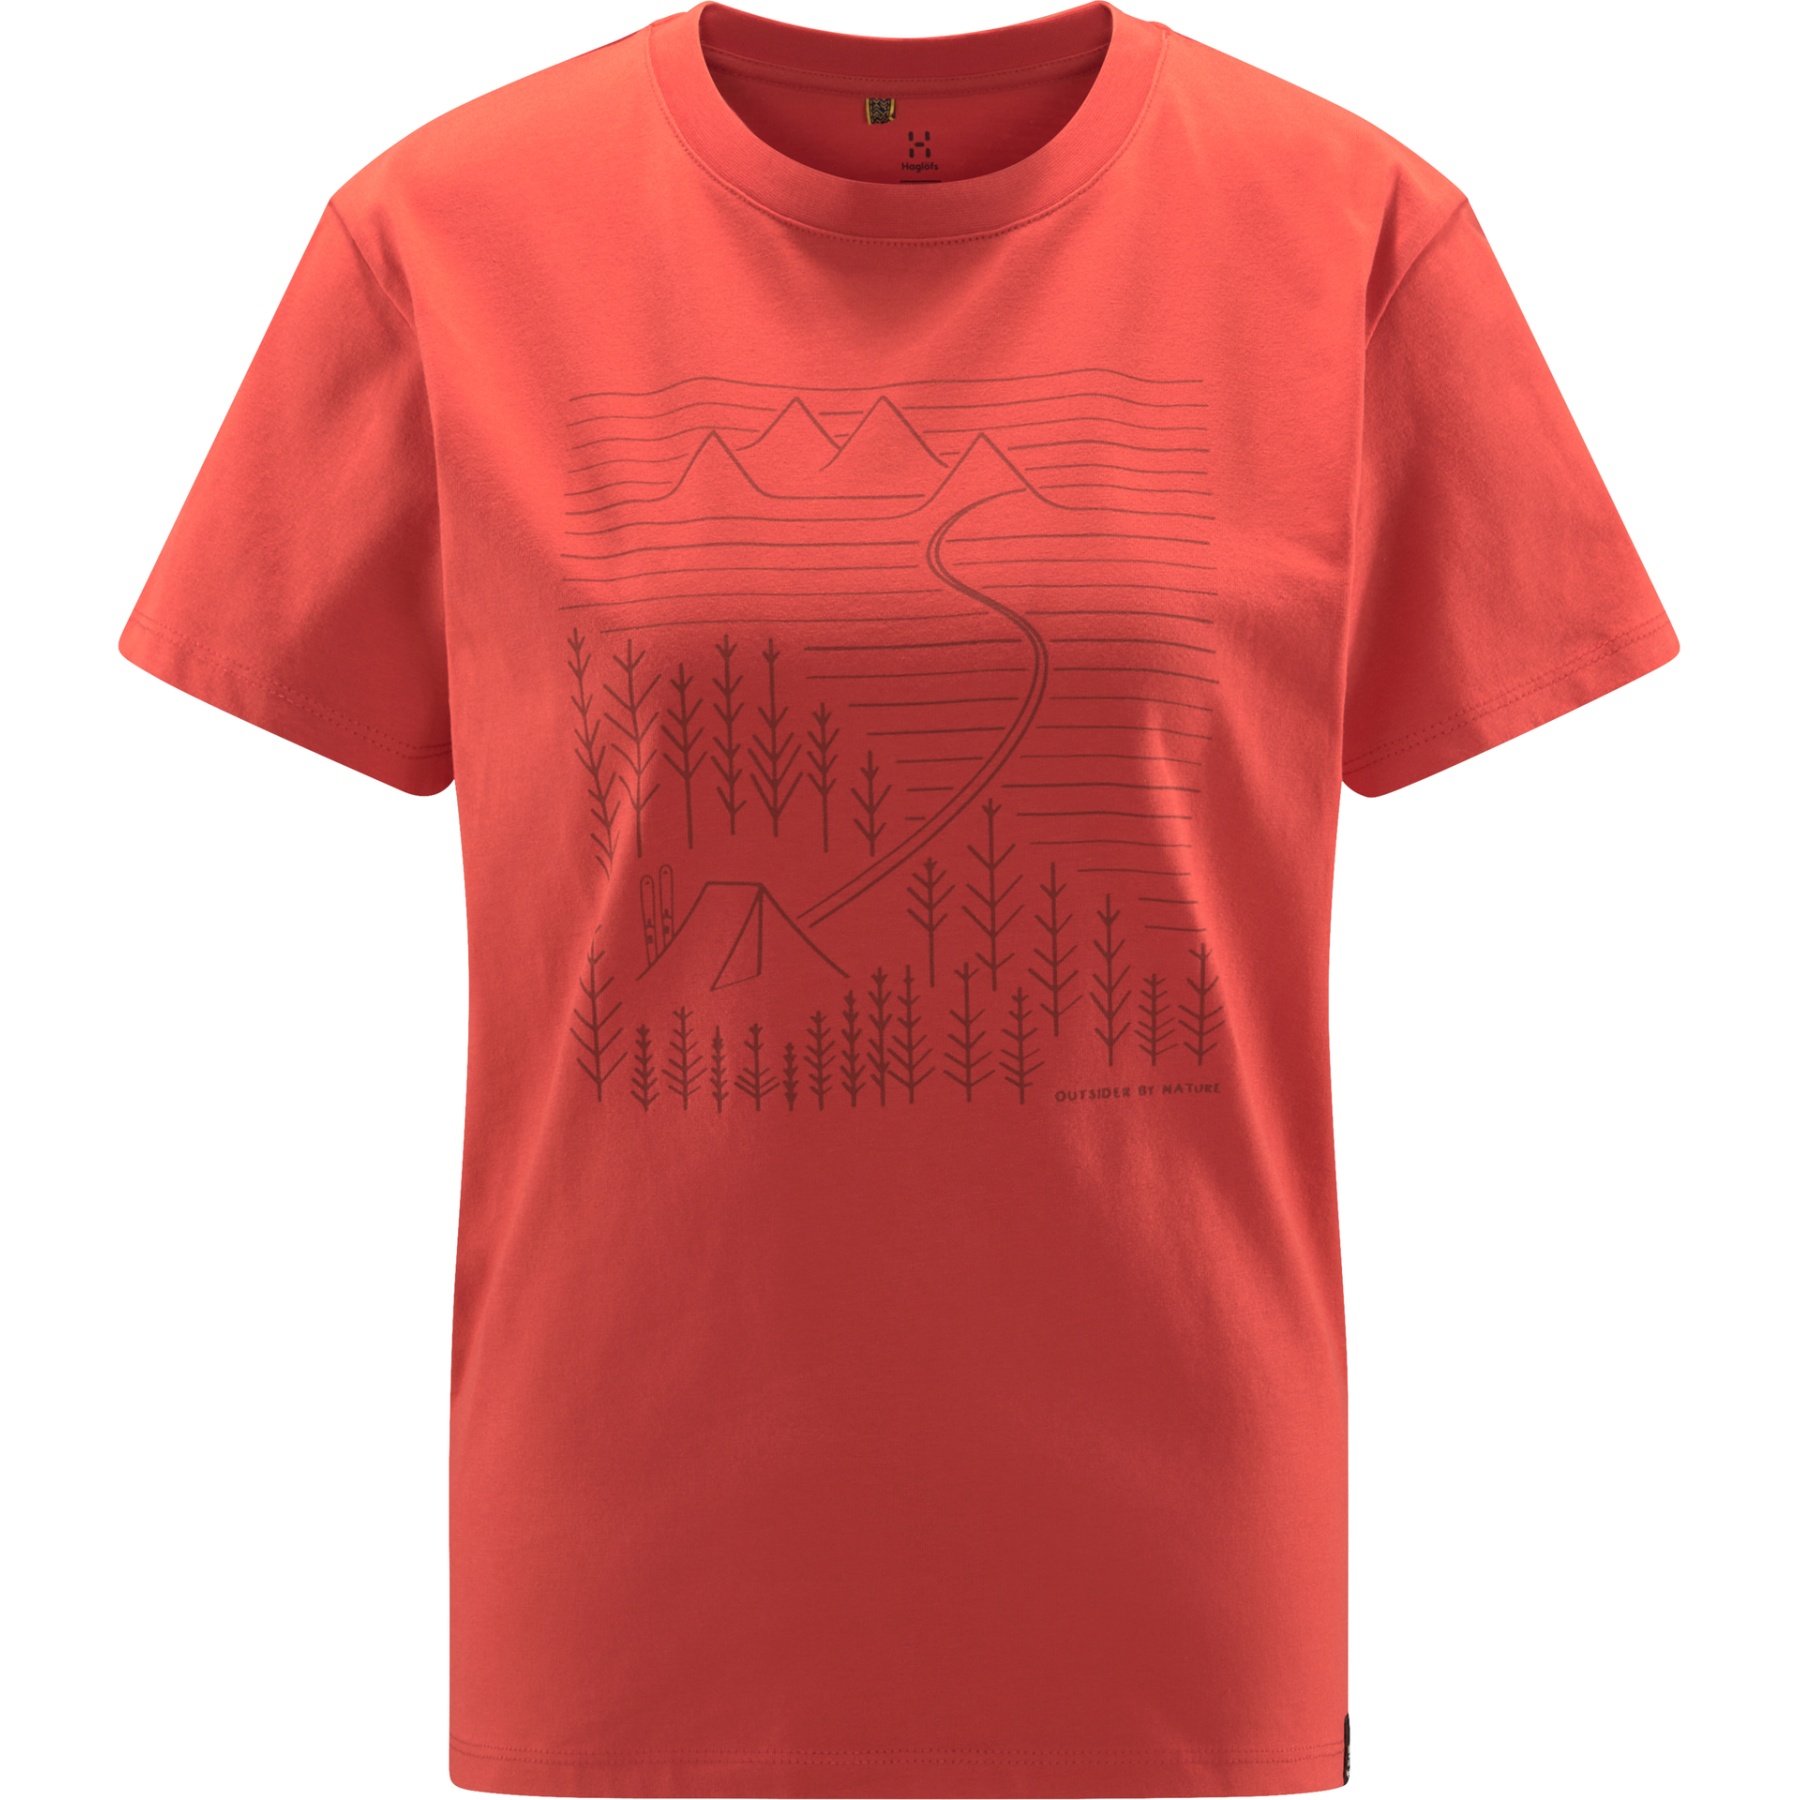 Produktbild von Haglöfs Camp T-Shirt Damen - poppy red 5LI